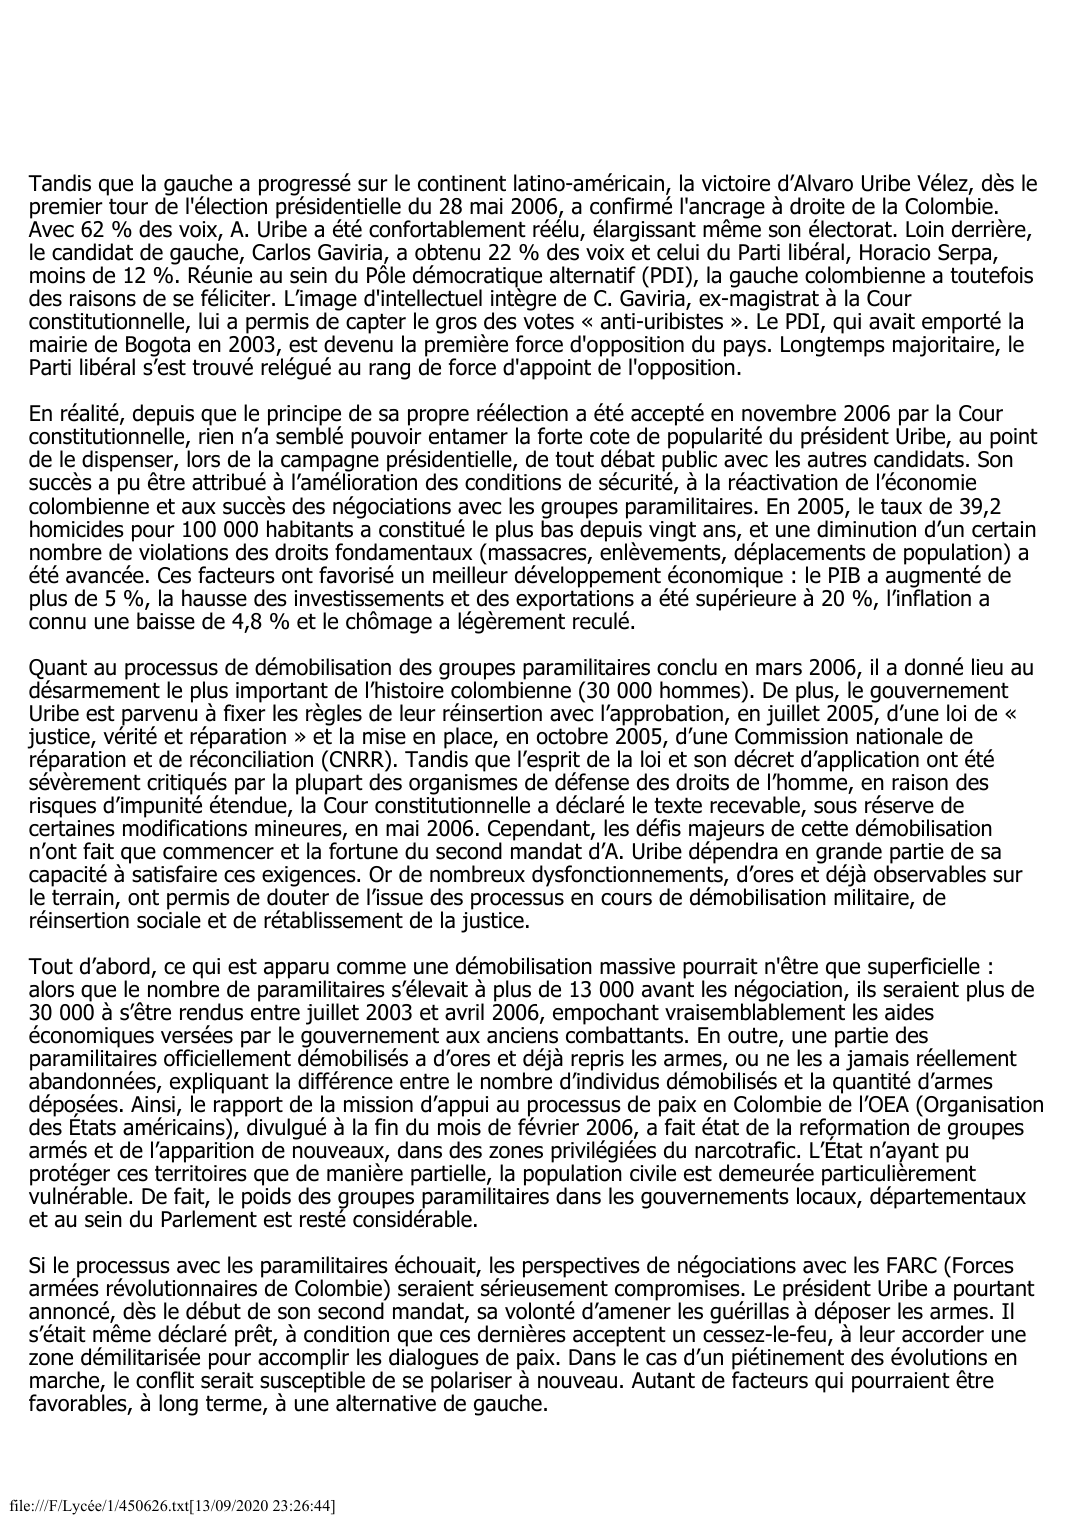 Prévisualisation du document Colombie - 2005-2006: Démobilisation paramilitaire en marche